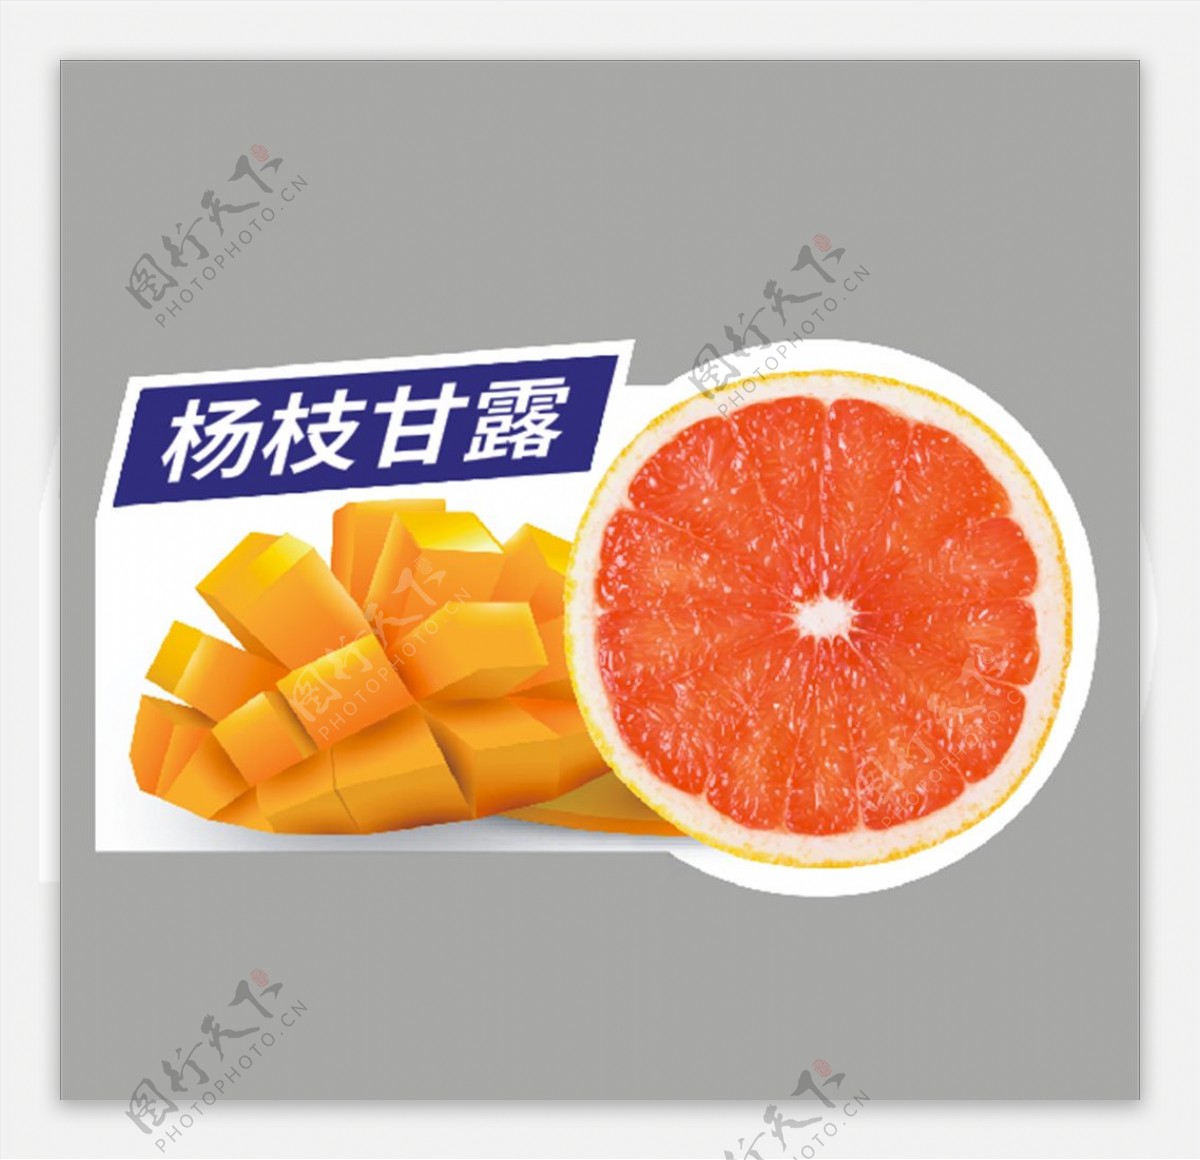 杨枝甘露橙子芒果广告设计图片